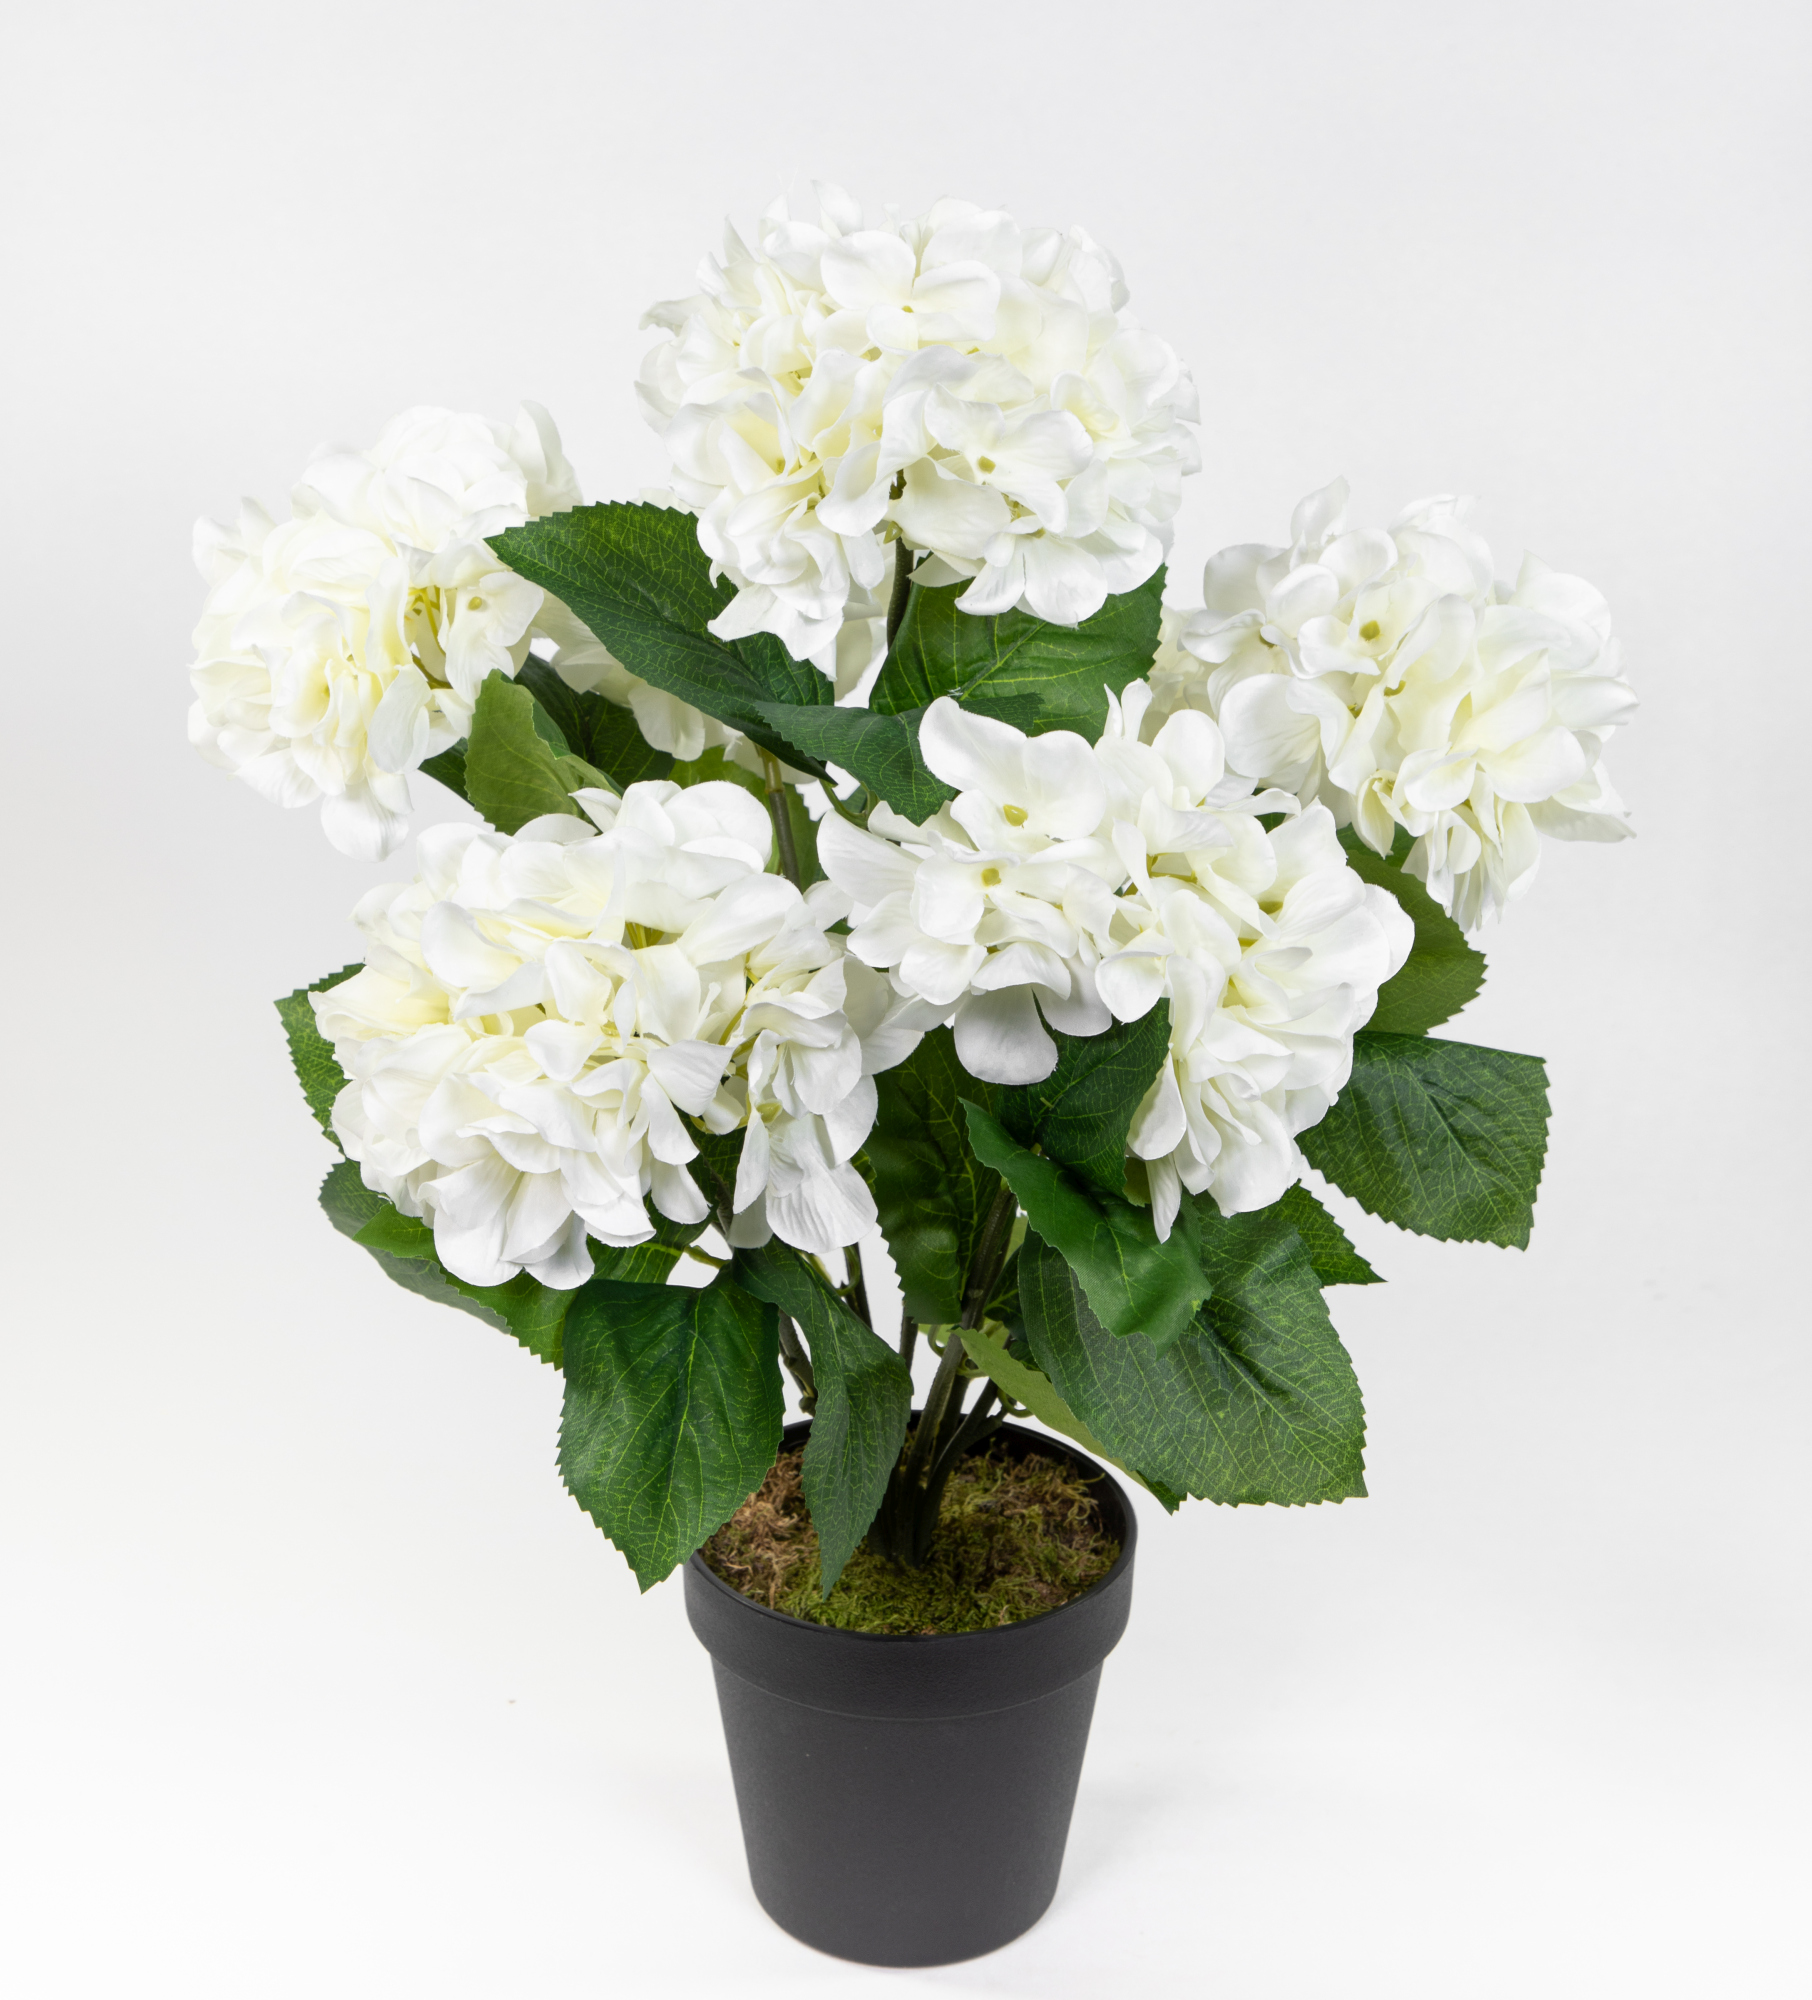 Großer Hortensienbusch 50x38cm weiß im Topf GA Kunstpflanze Kunstblumen künstliche Hortensie Pflanze